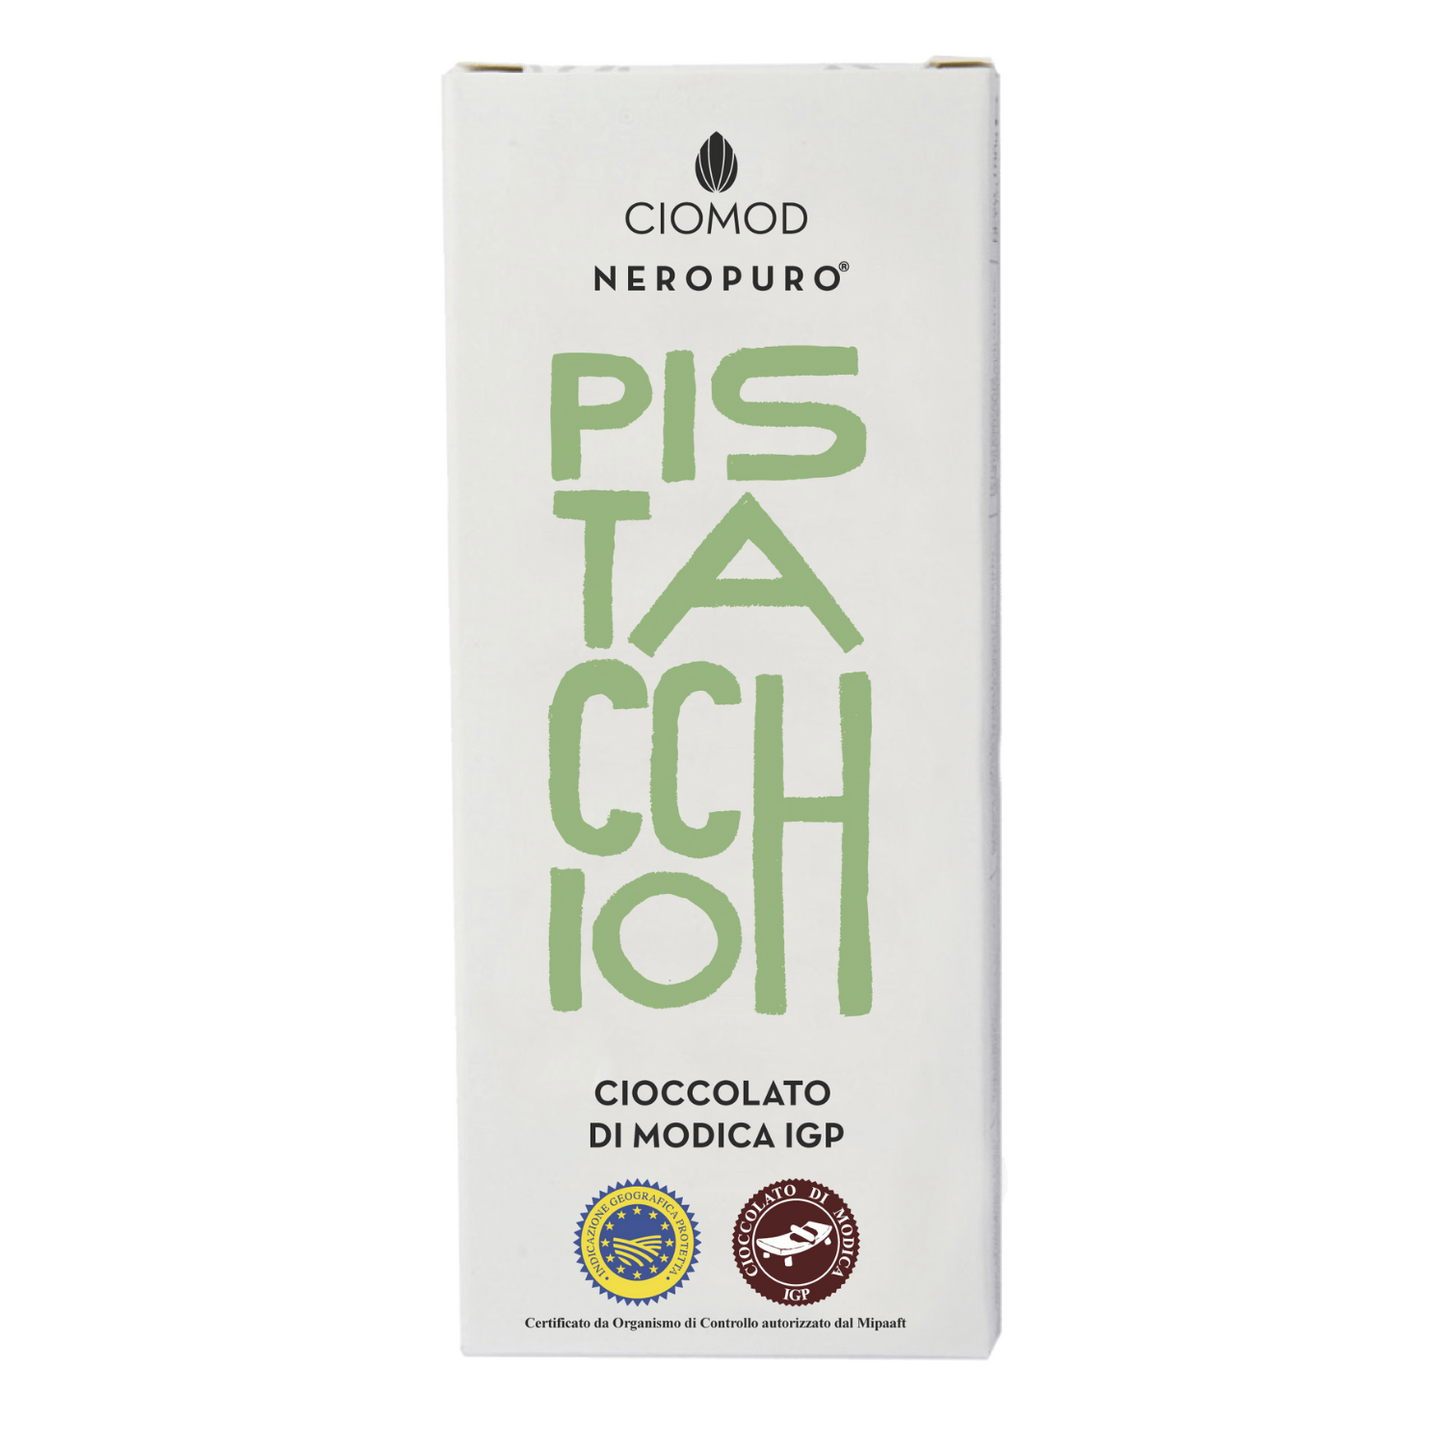 Cioccolato di Modica Igp Pistacchio - Ciomod